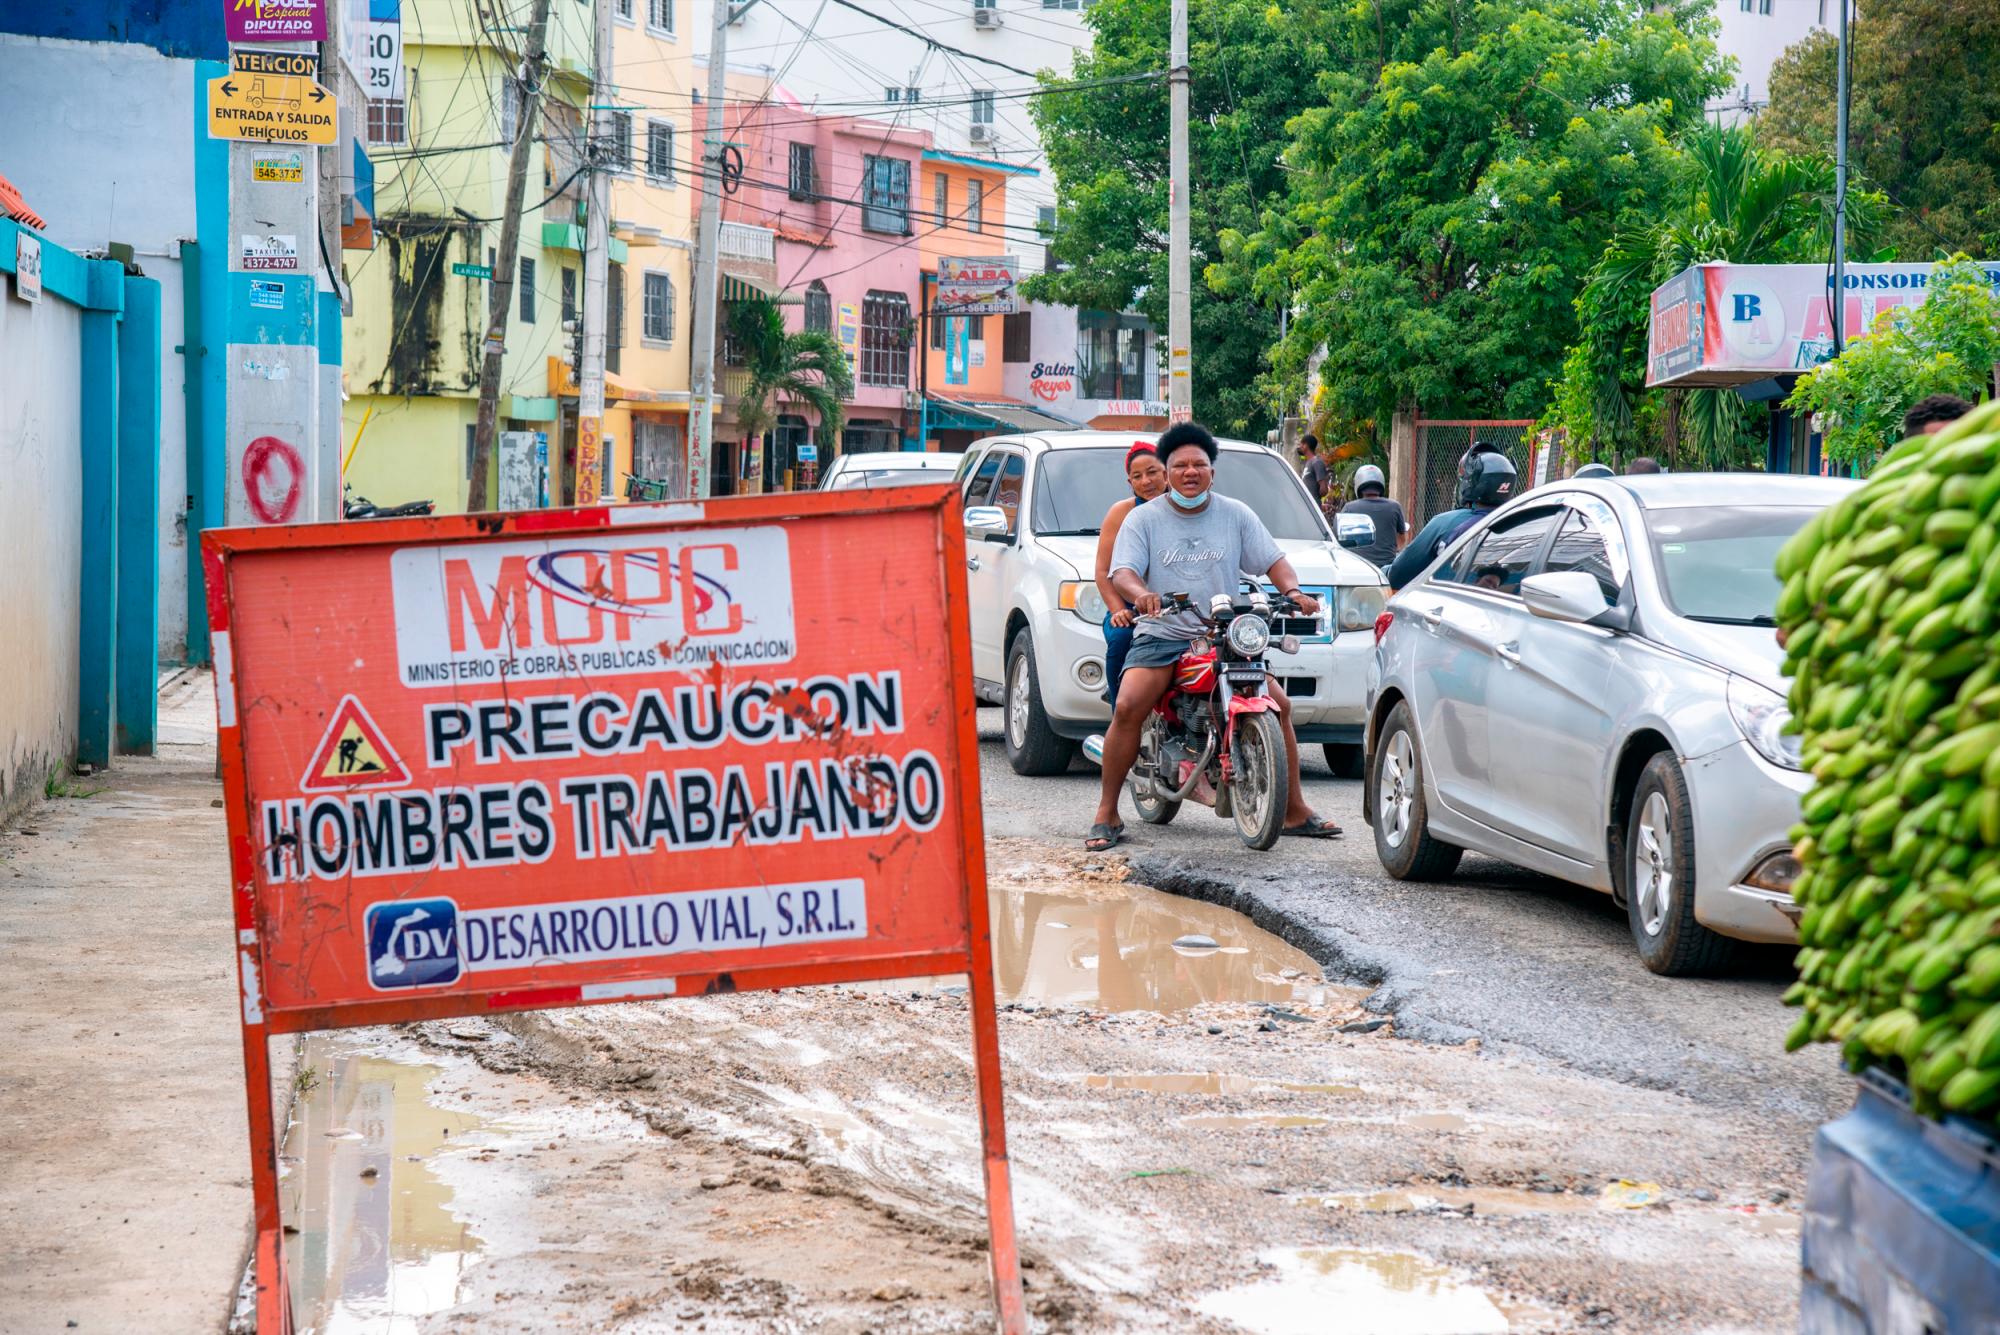 Obras Públicas inició labores, pero no se ve el trabajo. (Foto: Juan Miguel Peña)